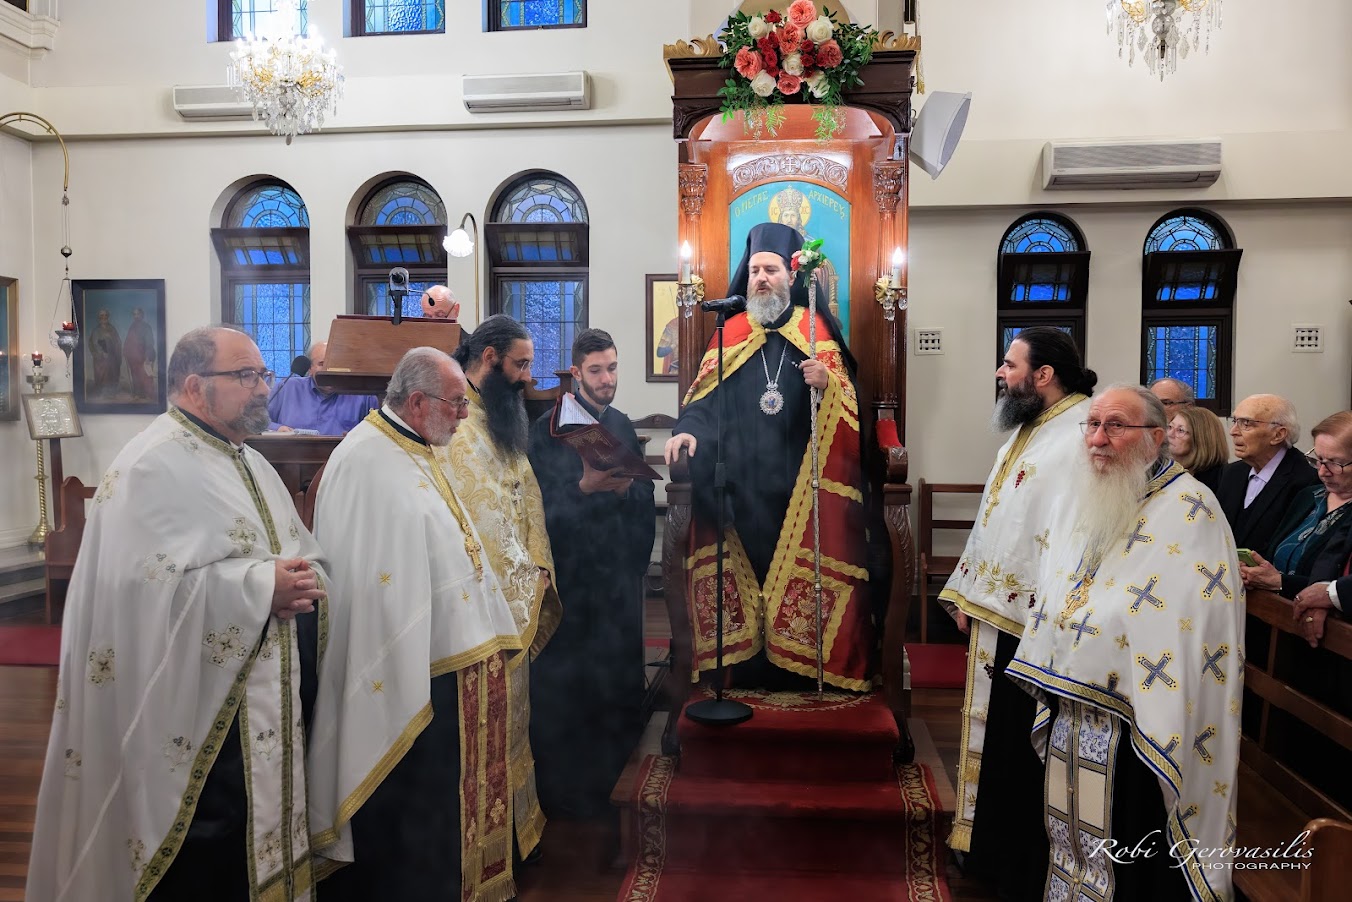 Λαμπρός εορτασμός των Αγίων Κωνσταντίνου και Ελένης στην Πέρθη | orthodoxia.online | ΟΡΘΟΔΟΞΙΑ - Ορθοδοξία | Αρχιεπισκοπή Αυστραλίας | Αρχιεπισκοπή Αυστραλίας | Εκκλησία | orthodoxia.online | ΟΡΘΟΔΟΞΙΑ - Ορθοδοξία